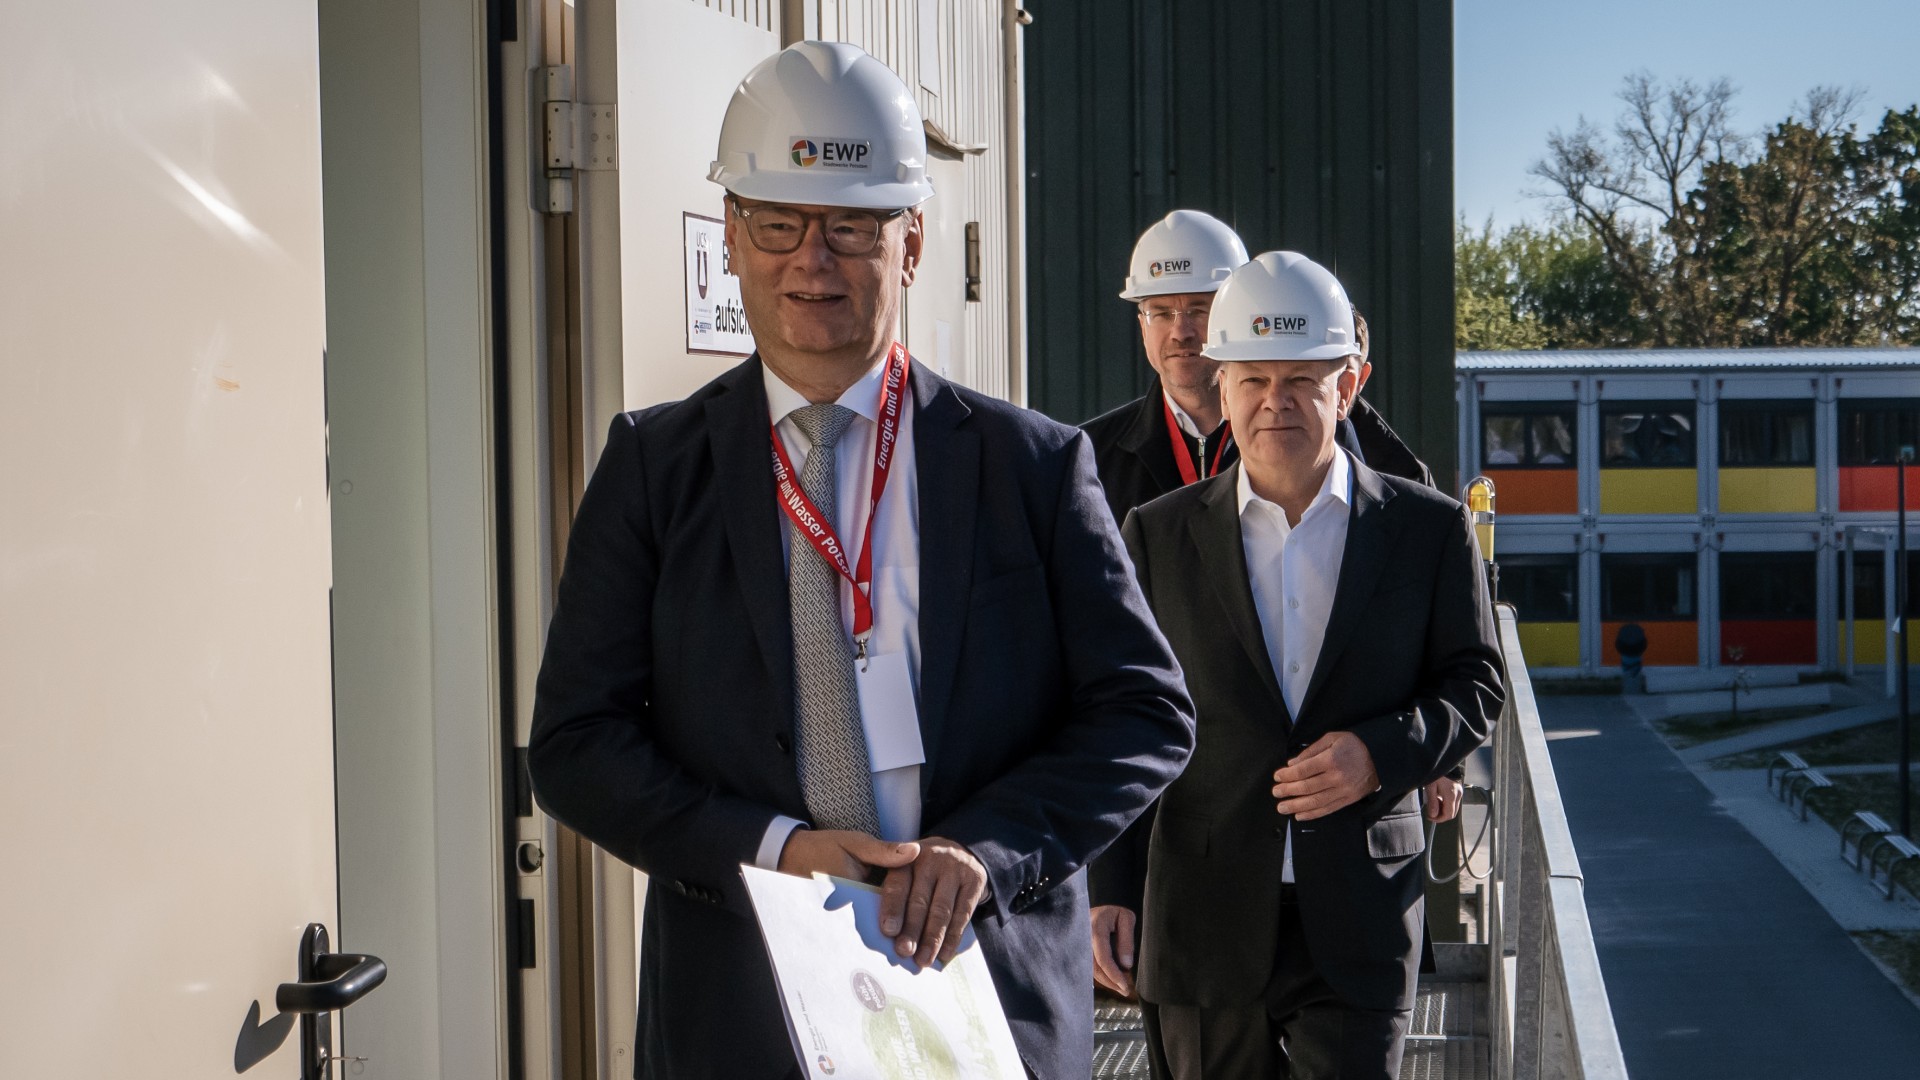 Eckard Veil empfäng Bundeskazler Olaf Scholz und OB Mike Schubert auf der Geothermie-Baustelle, © Florian Sorge